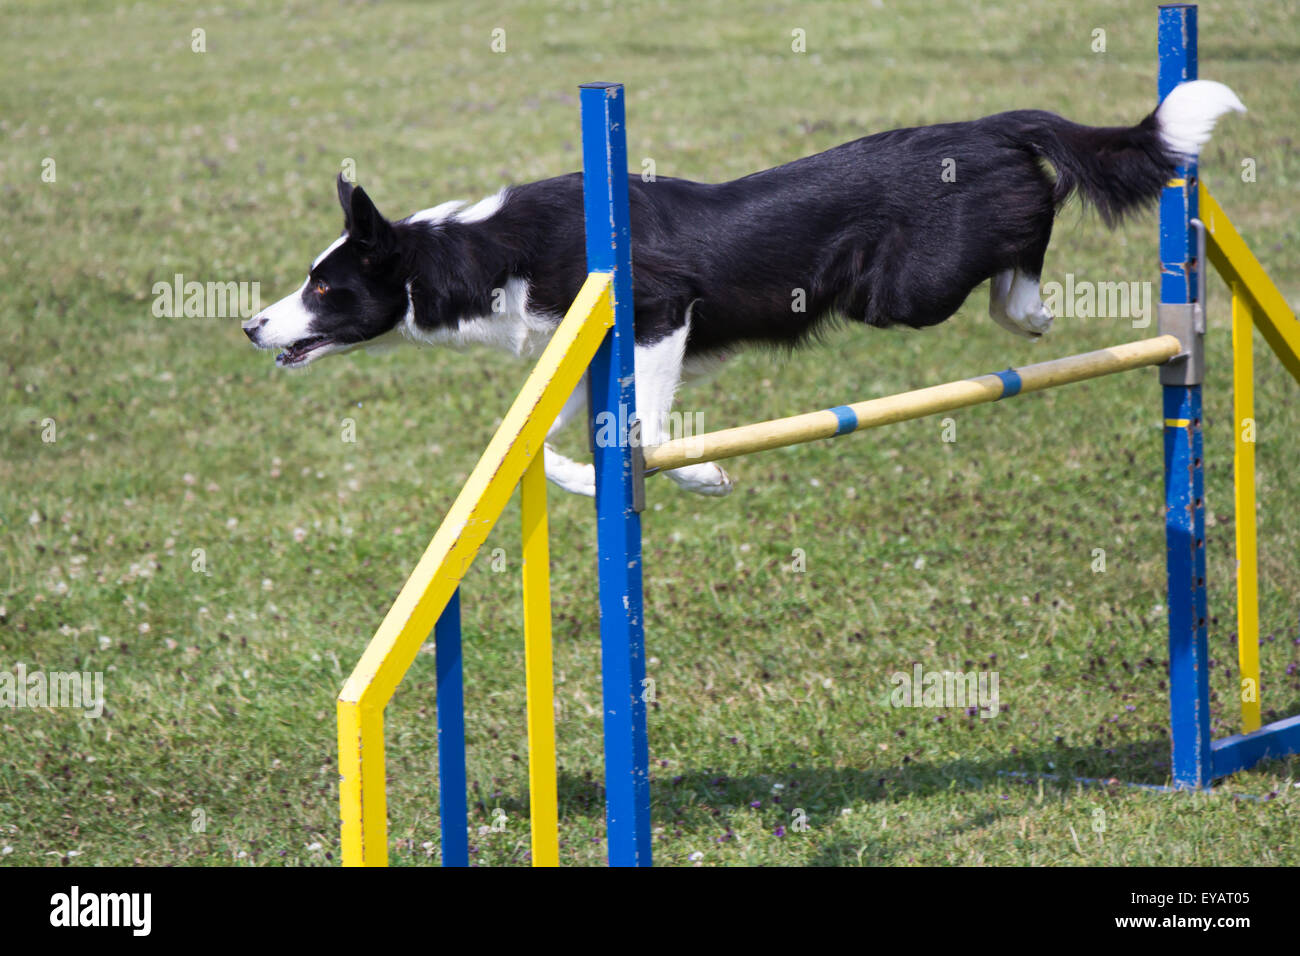 L'Agilité sauter par dessus un obstacle lors d'un concours d'agility Banque D'Images